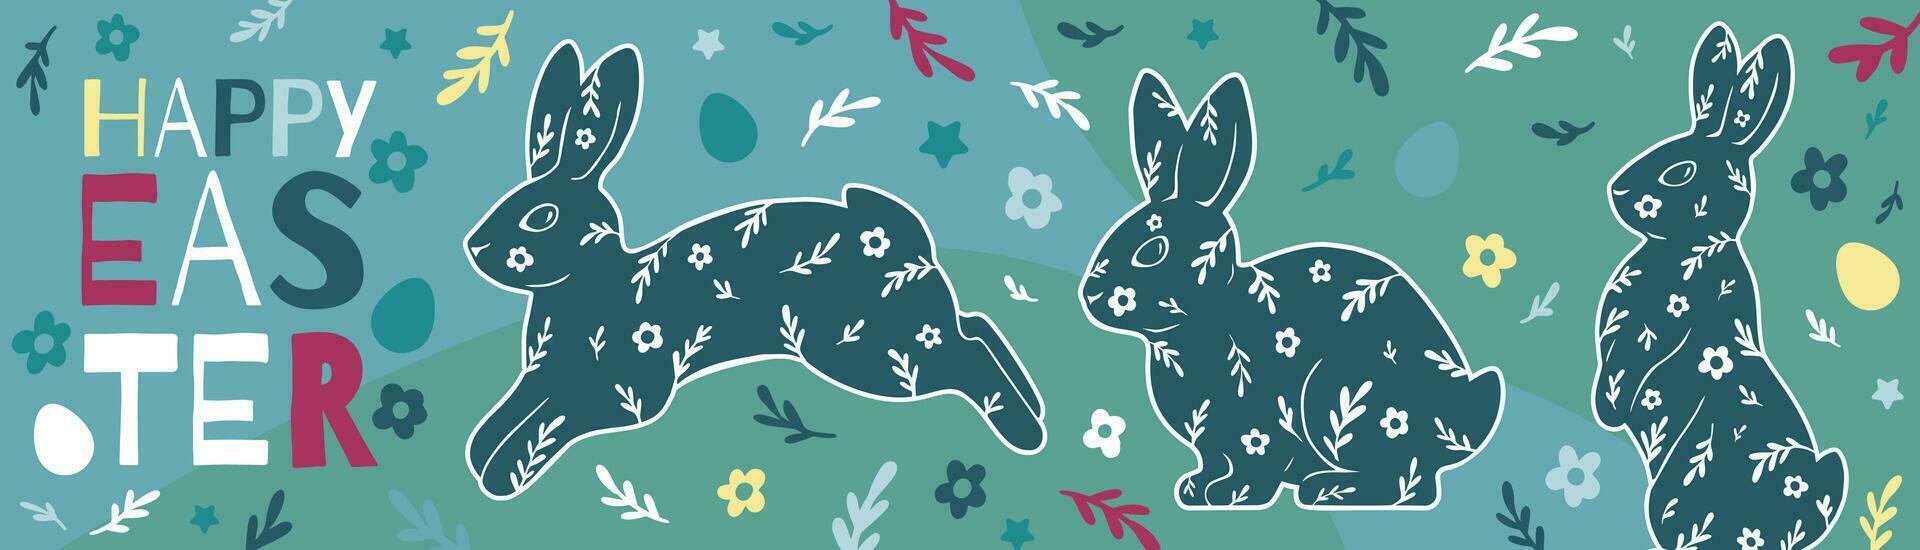 contento Pascua de Resurrección largo horizontal bandera con conejitos, huevos, flores, y texto. hermosa brillante moderno vector ilustración.